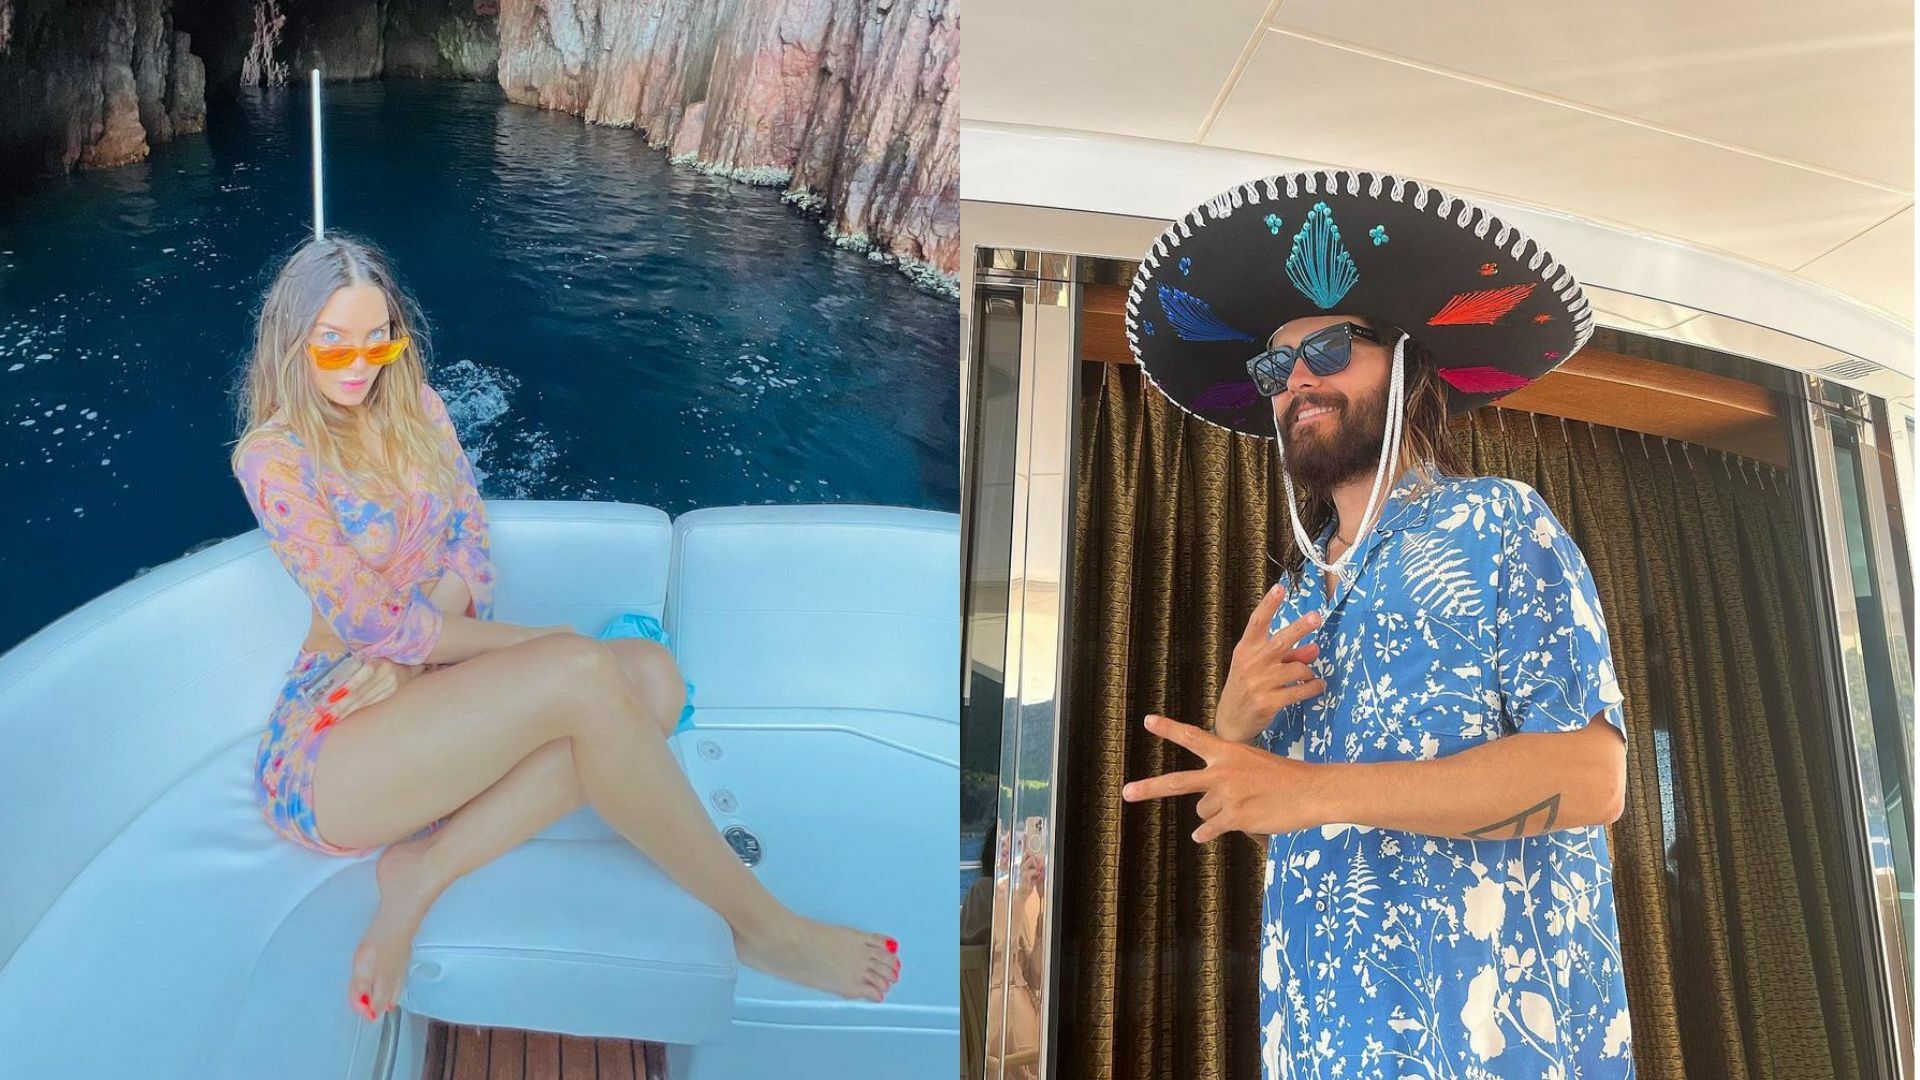 Belinda comparte fotos y videos de sus vacaciones junto al actor Jared Leto 